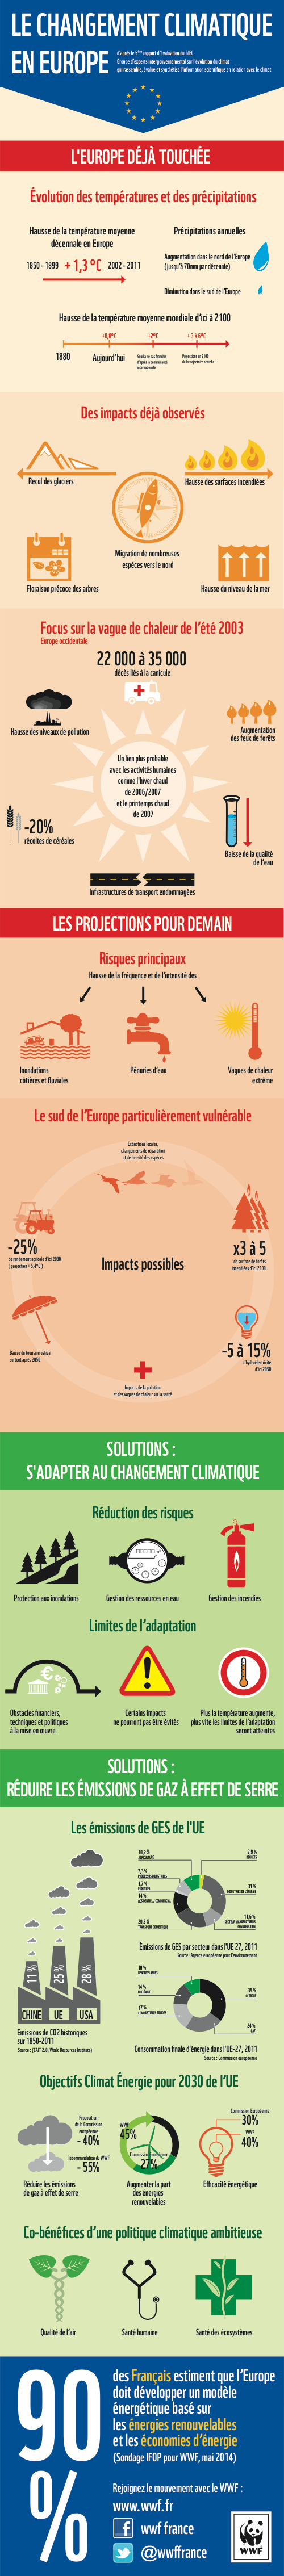 Infographie du WWF « Les changements climatiques en Europe »